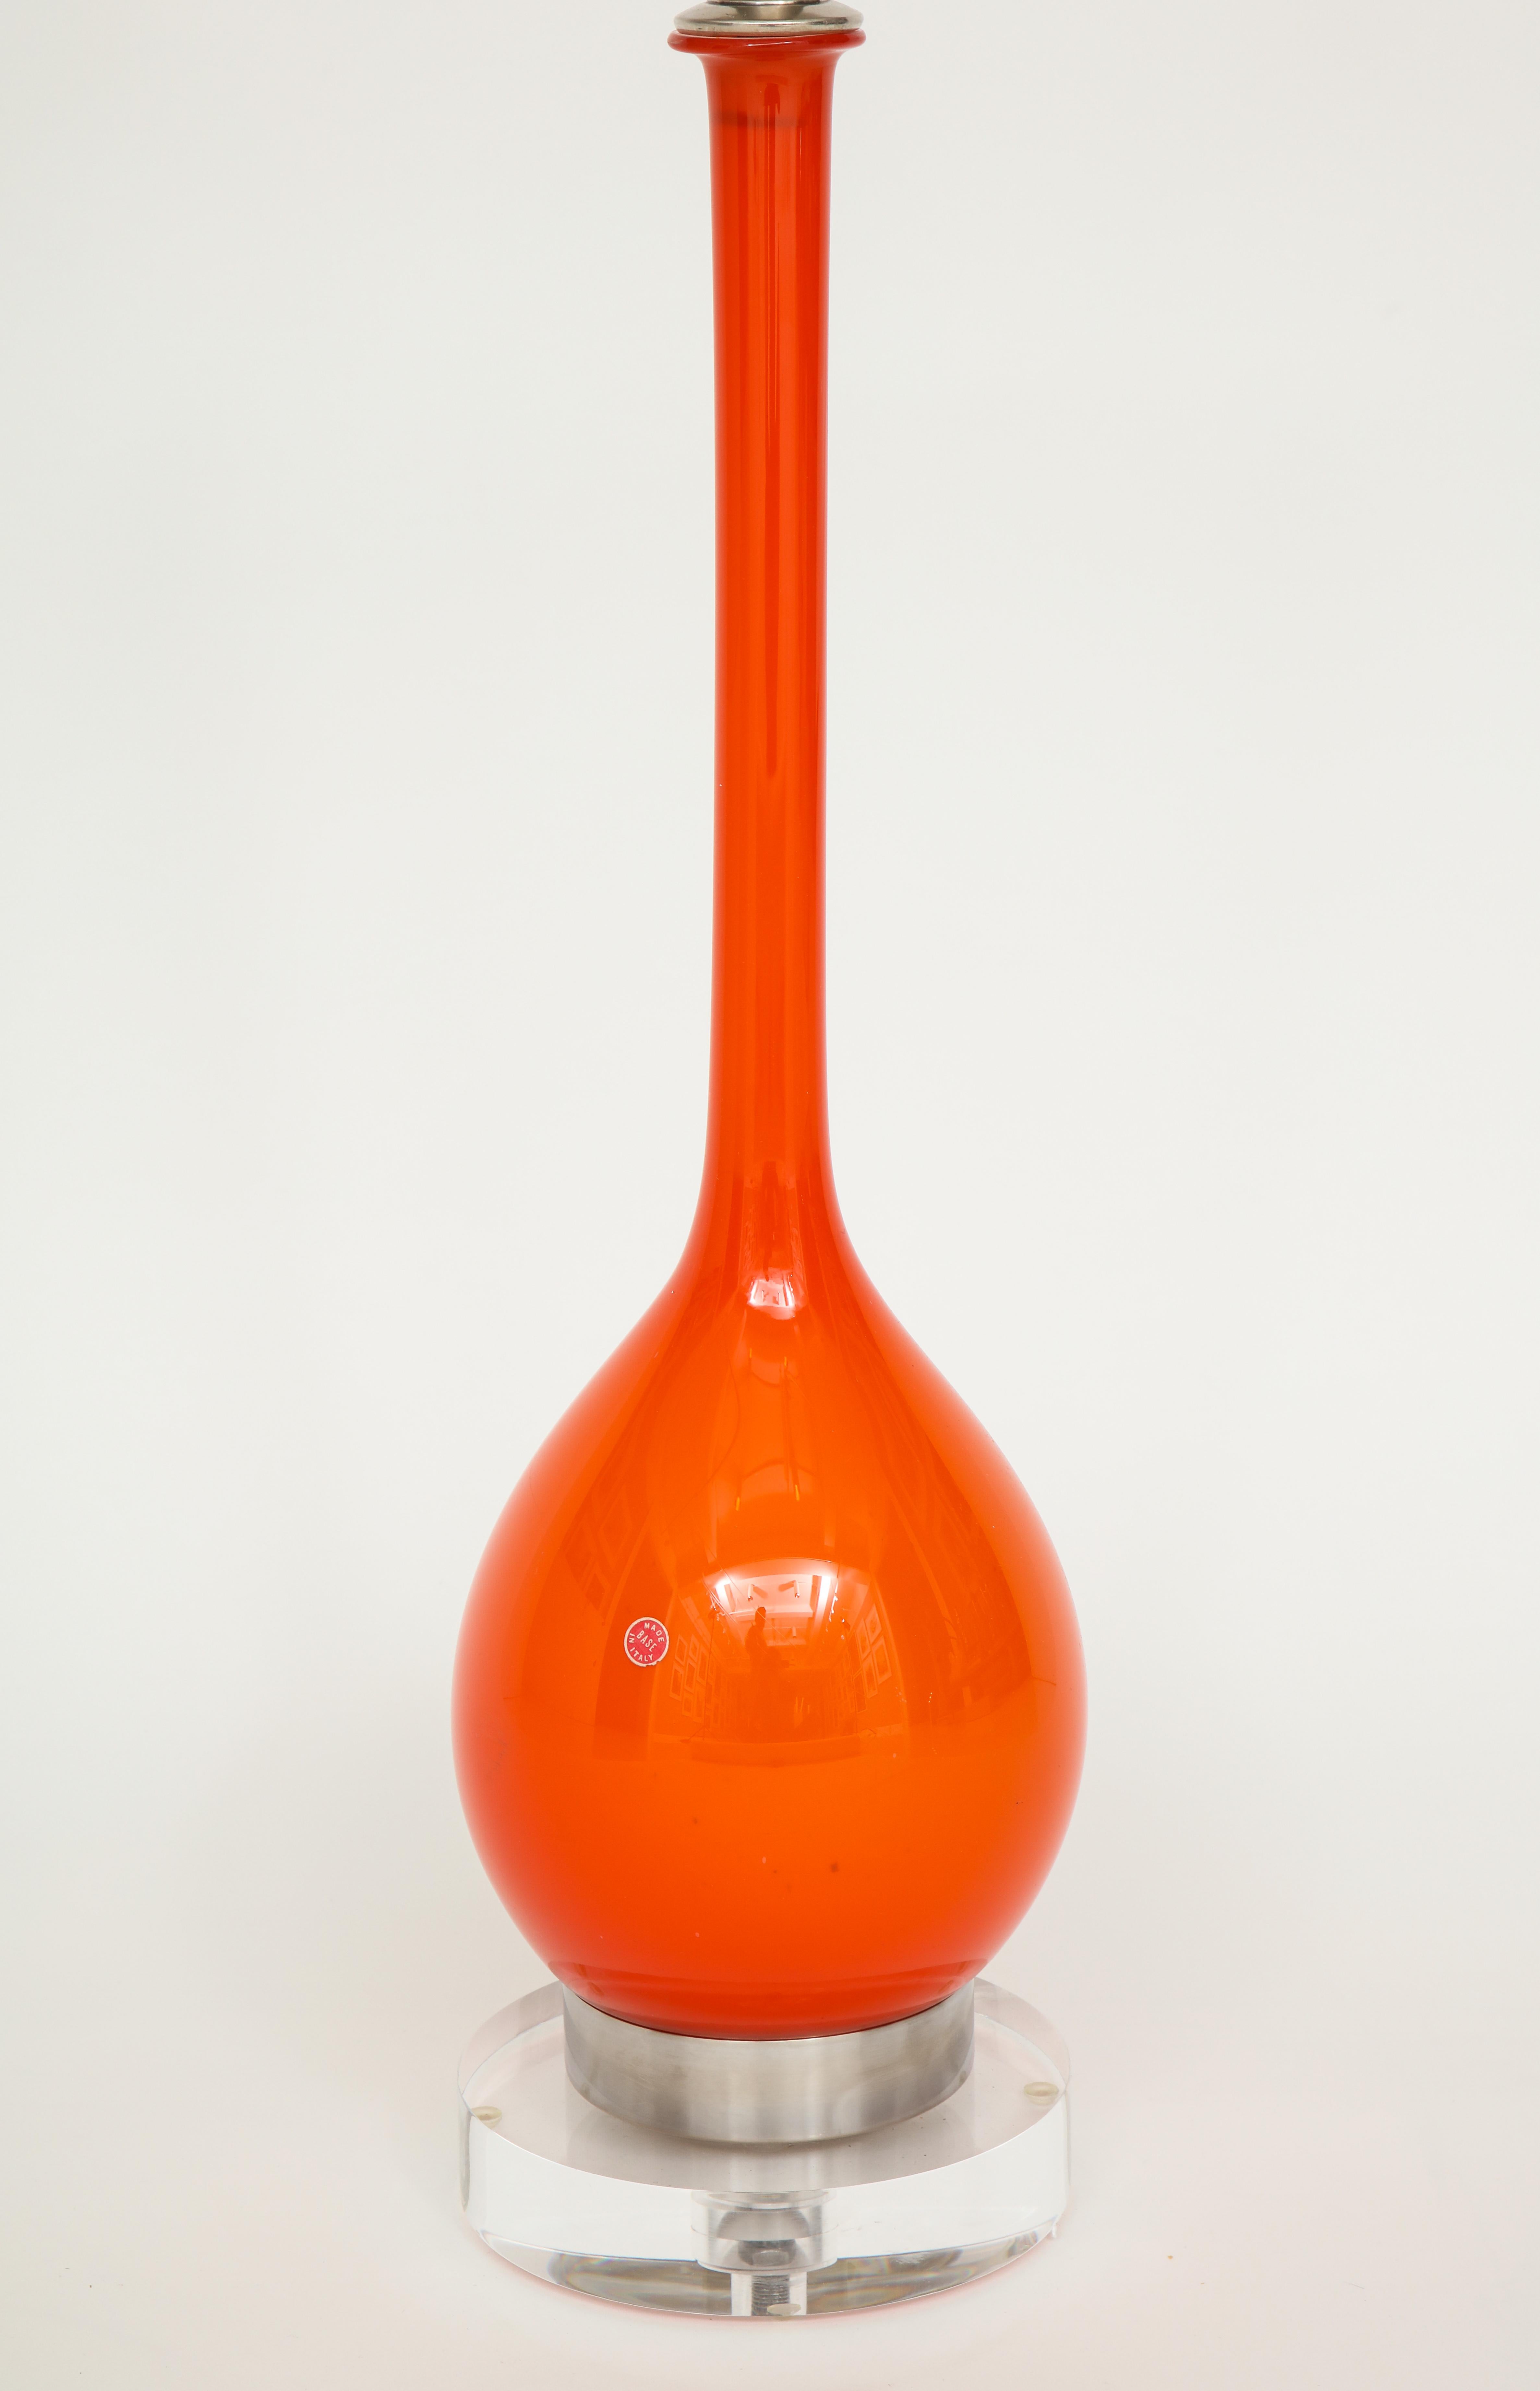 Italian Orange Murano Glass Lamps